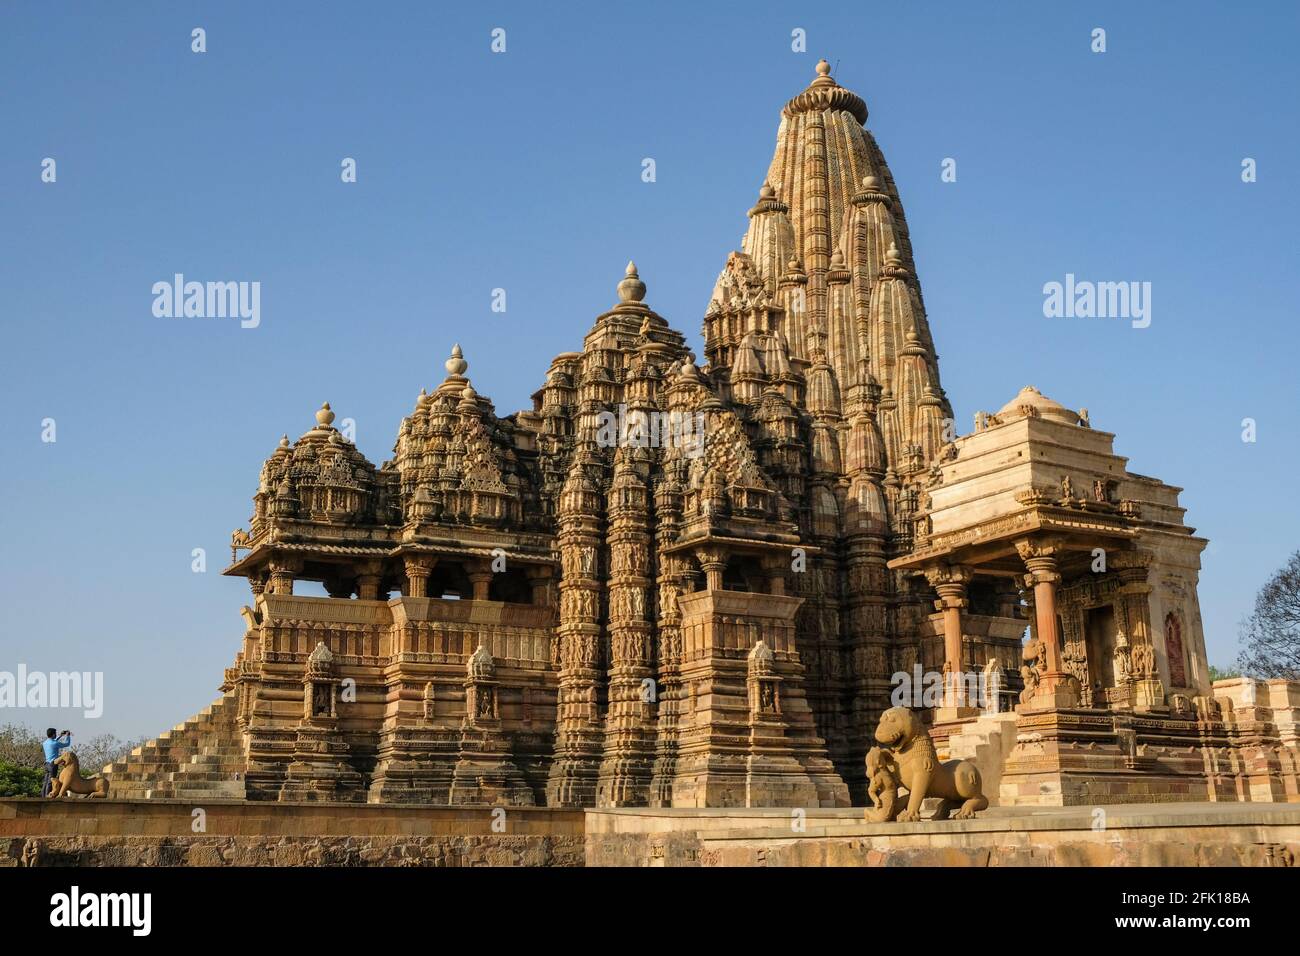 The Kandariya Mahadev Temple and the Mahadeva Temple in Khajuraho, Madhya Pradesh, India. Forms part of the Khajuraho Group of Monuments. Stock Photo